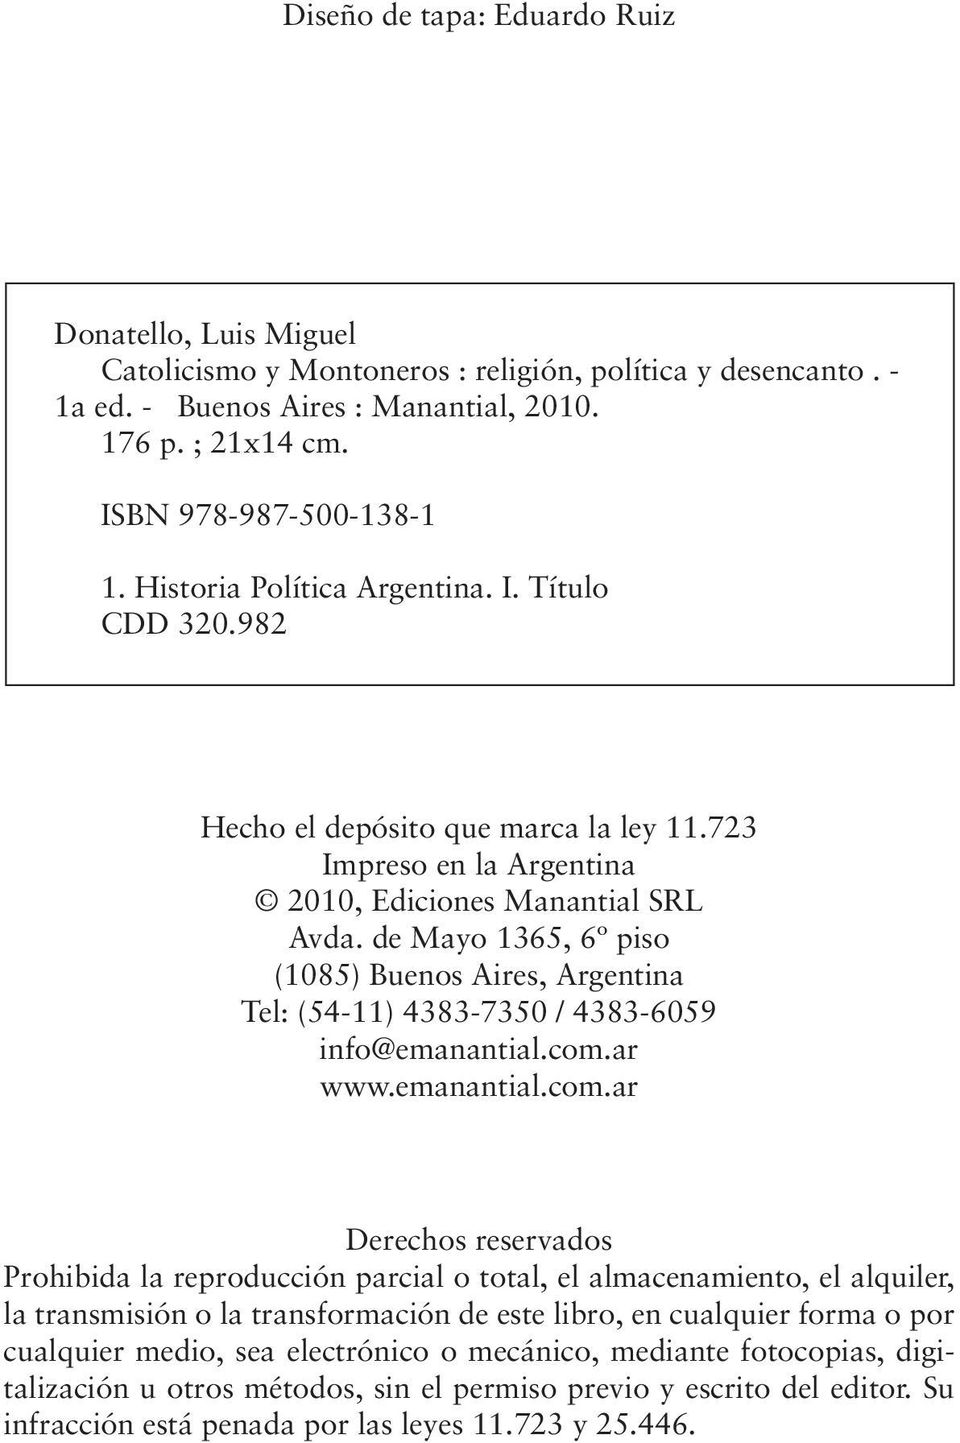 Esta Donatello, obra, publicada Luis Miguel en el marco del Programa de Ayuda a la Publicación Catolicismo y Montoneros : religión, política y desencanto. - Victoria 1a ed.